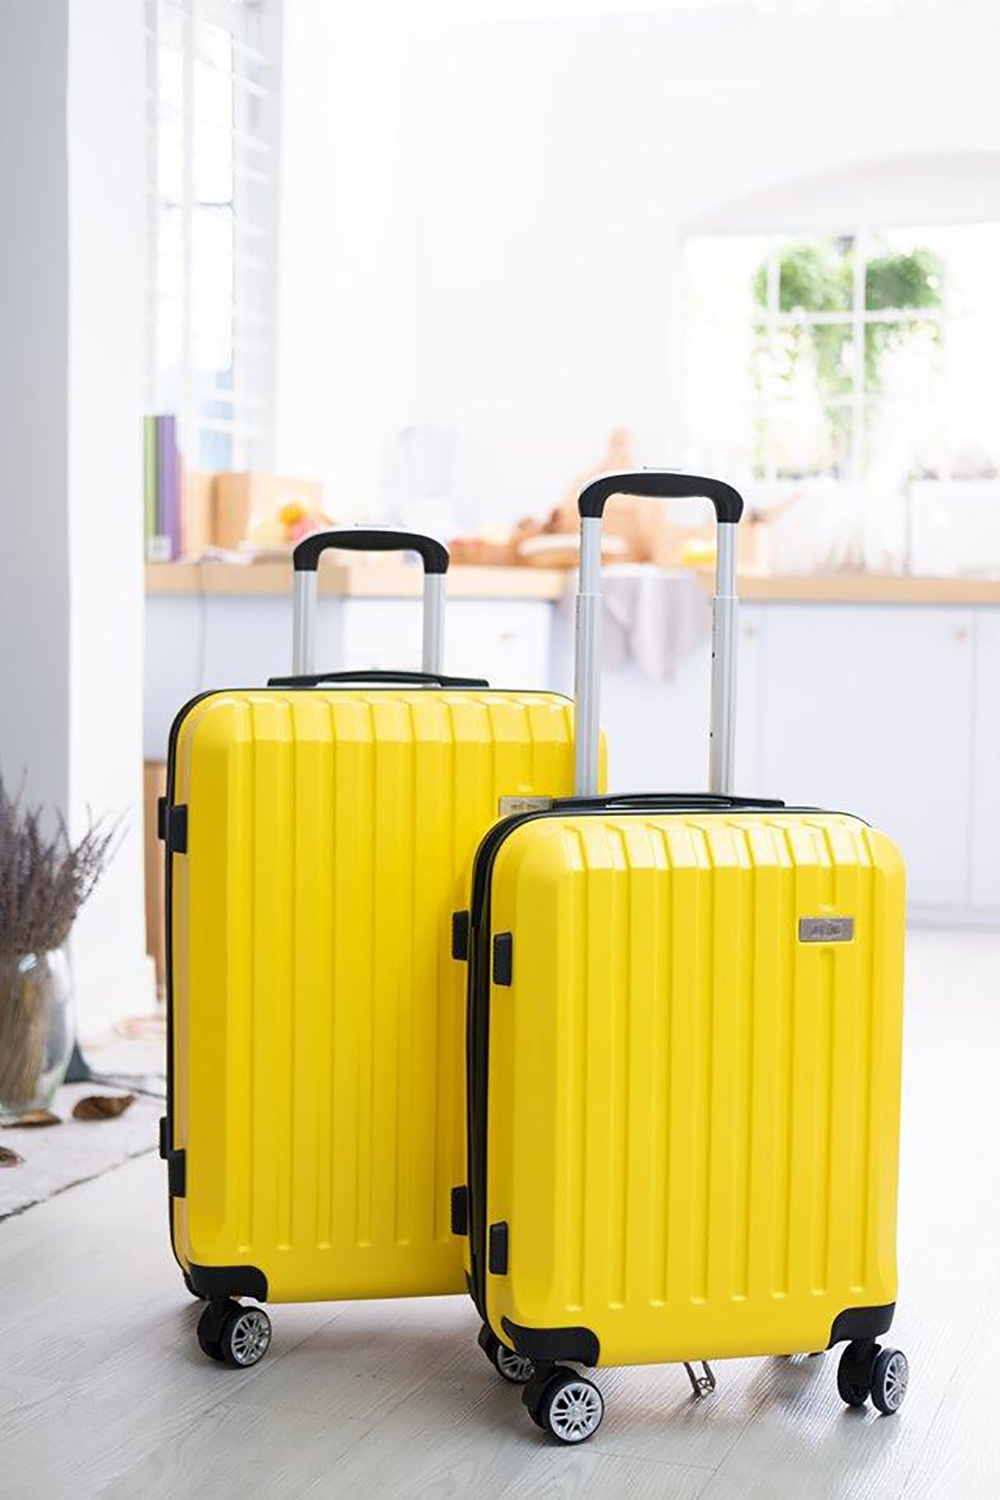 Đừng bỏ lỡ: Cơ hội mua vali xịn, giá cực mịn chỉ từ 499K 4